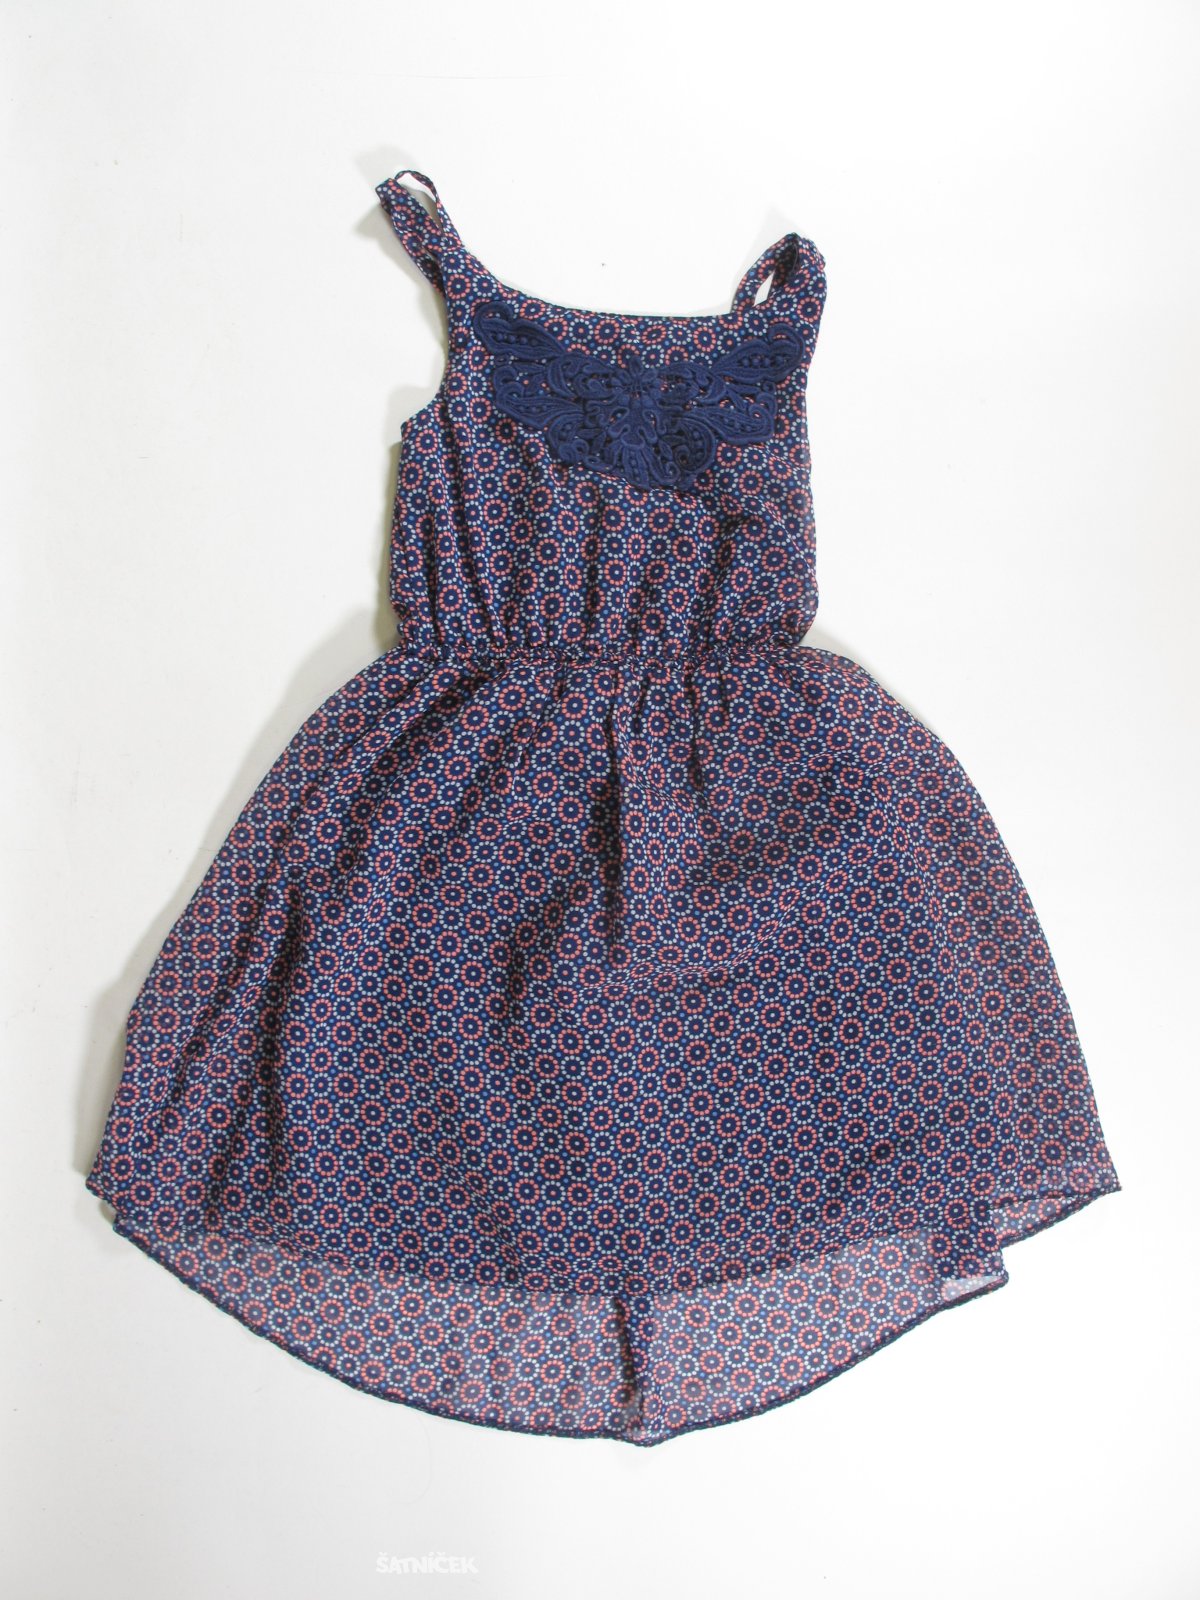 Kytkované šaty pro holky na ramínka  secondhand